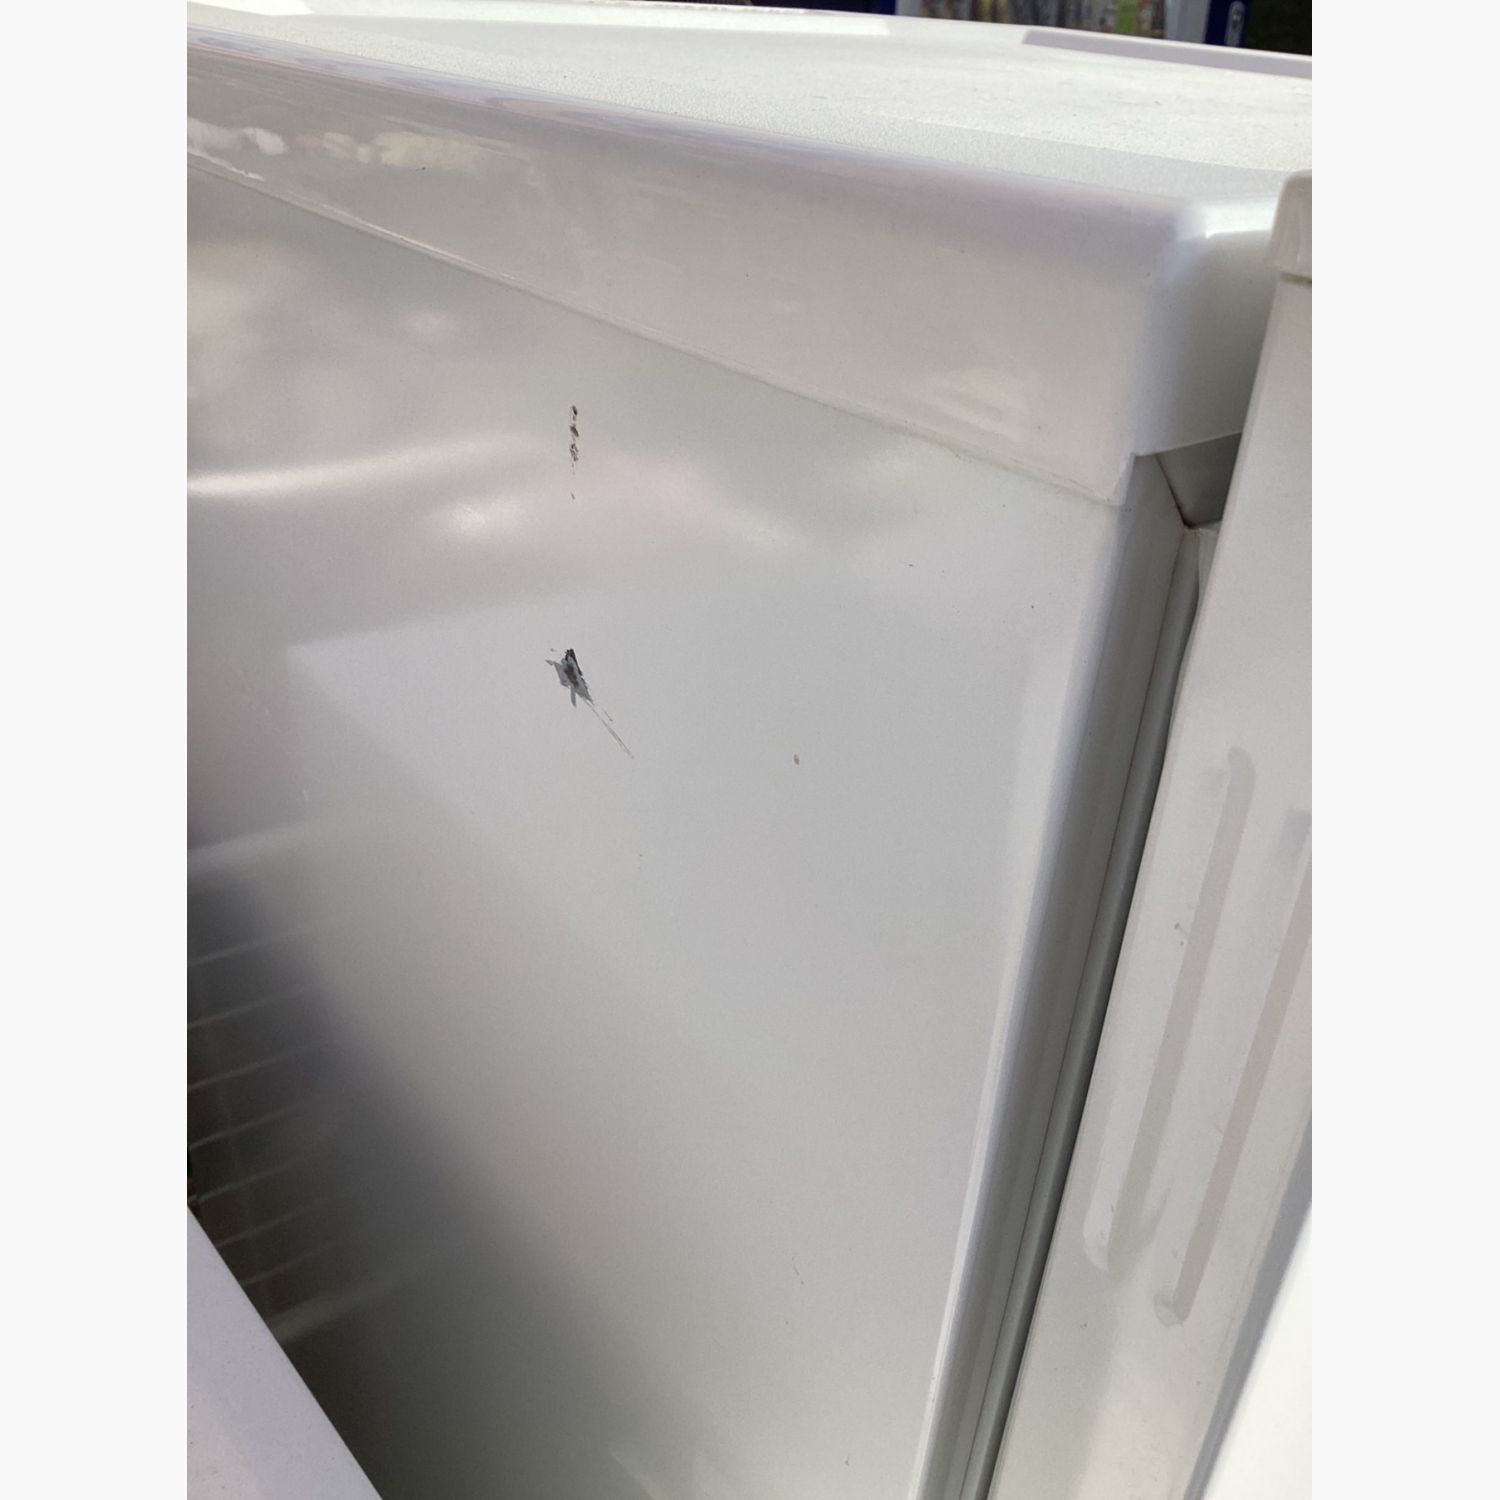 TWINBIRD (ツインバード) 2ドア冷蔵庫 HR-E911 2019年製 110L 